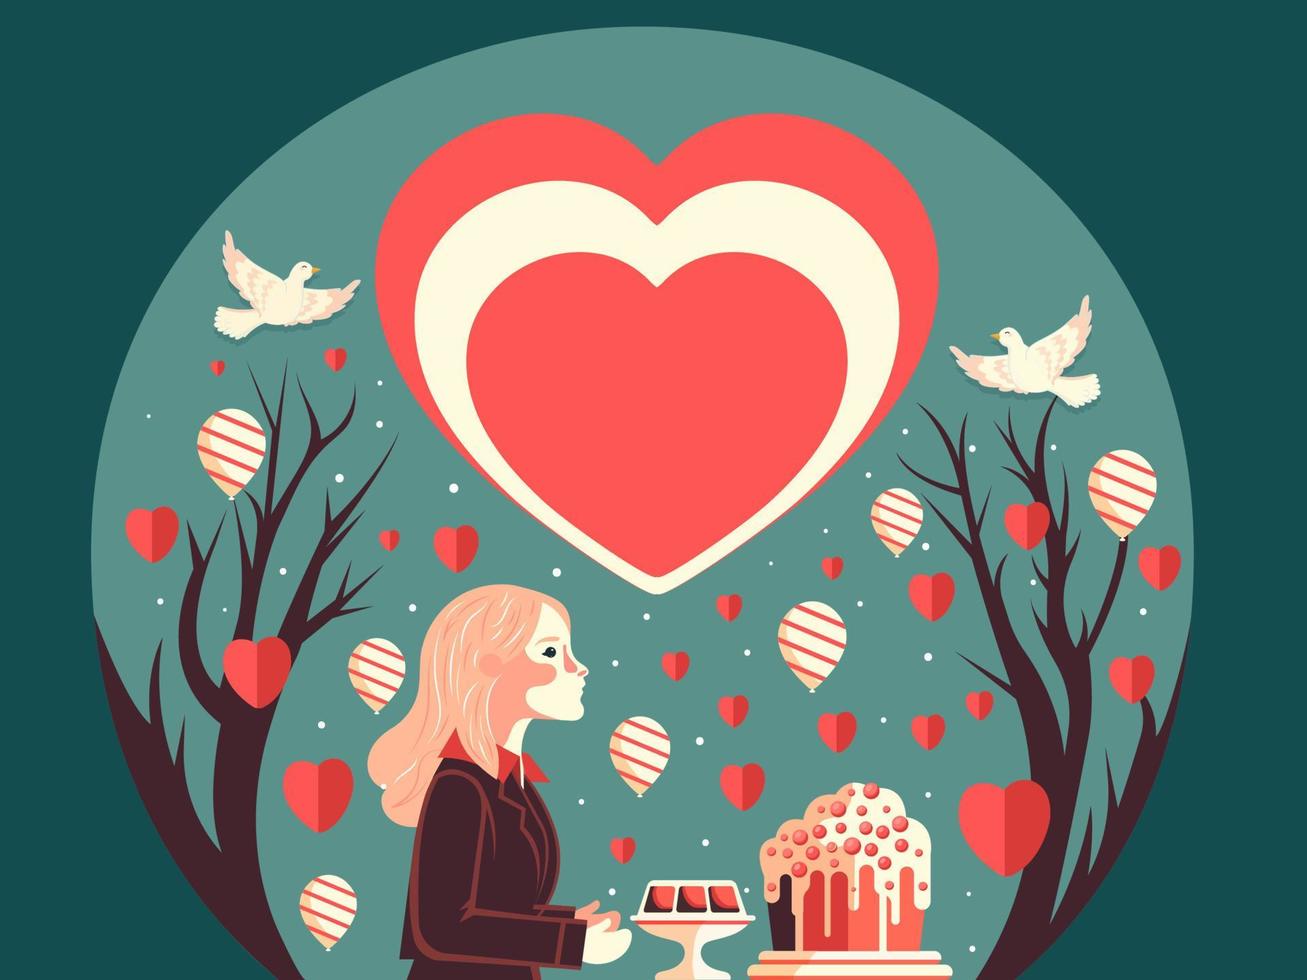 Valentijnsdag dag achtergrond met jong meisje karakter, toetjes, ballonnen, papier harten, kaal bomen en vliegend duiven. vector